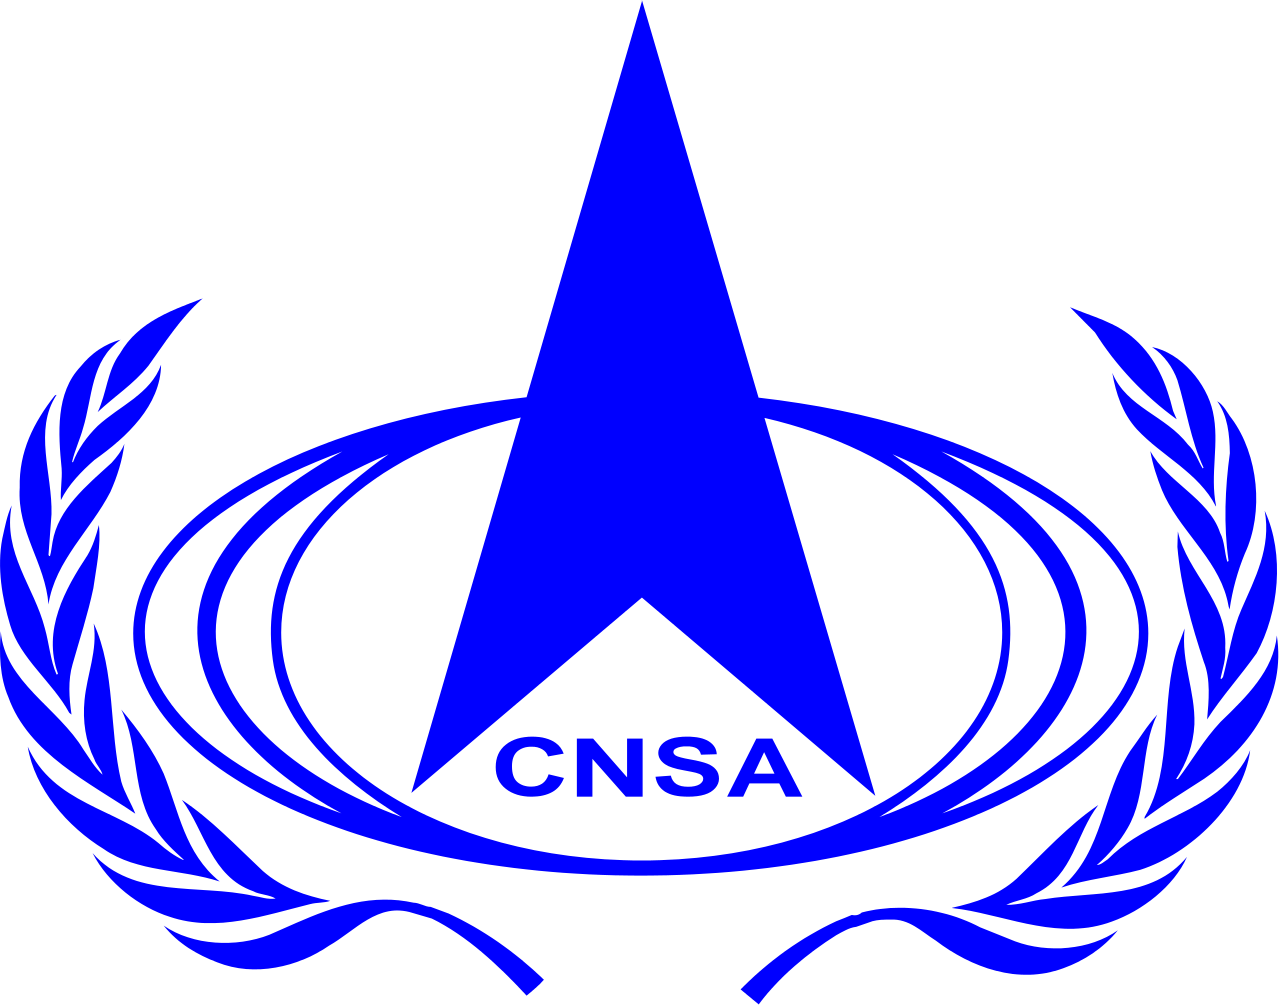 CNSA - China National Space Administration - Китайское национальное космическое управление - Государственного управления авиационной и космической промышленности КНР